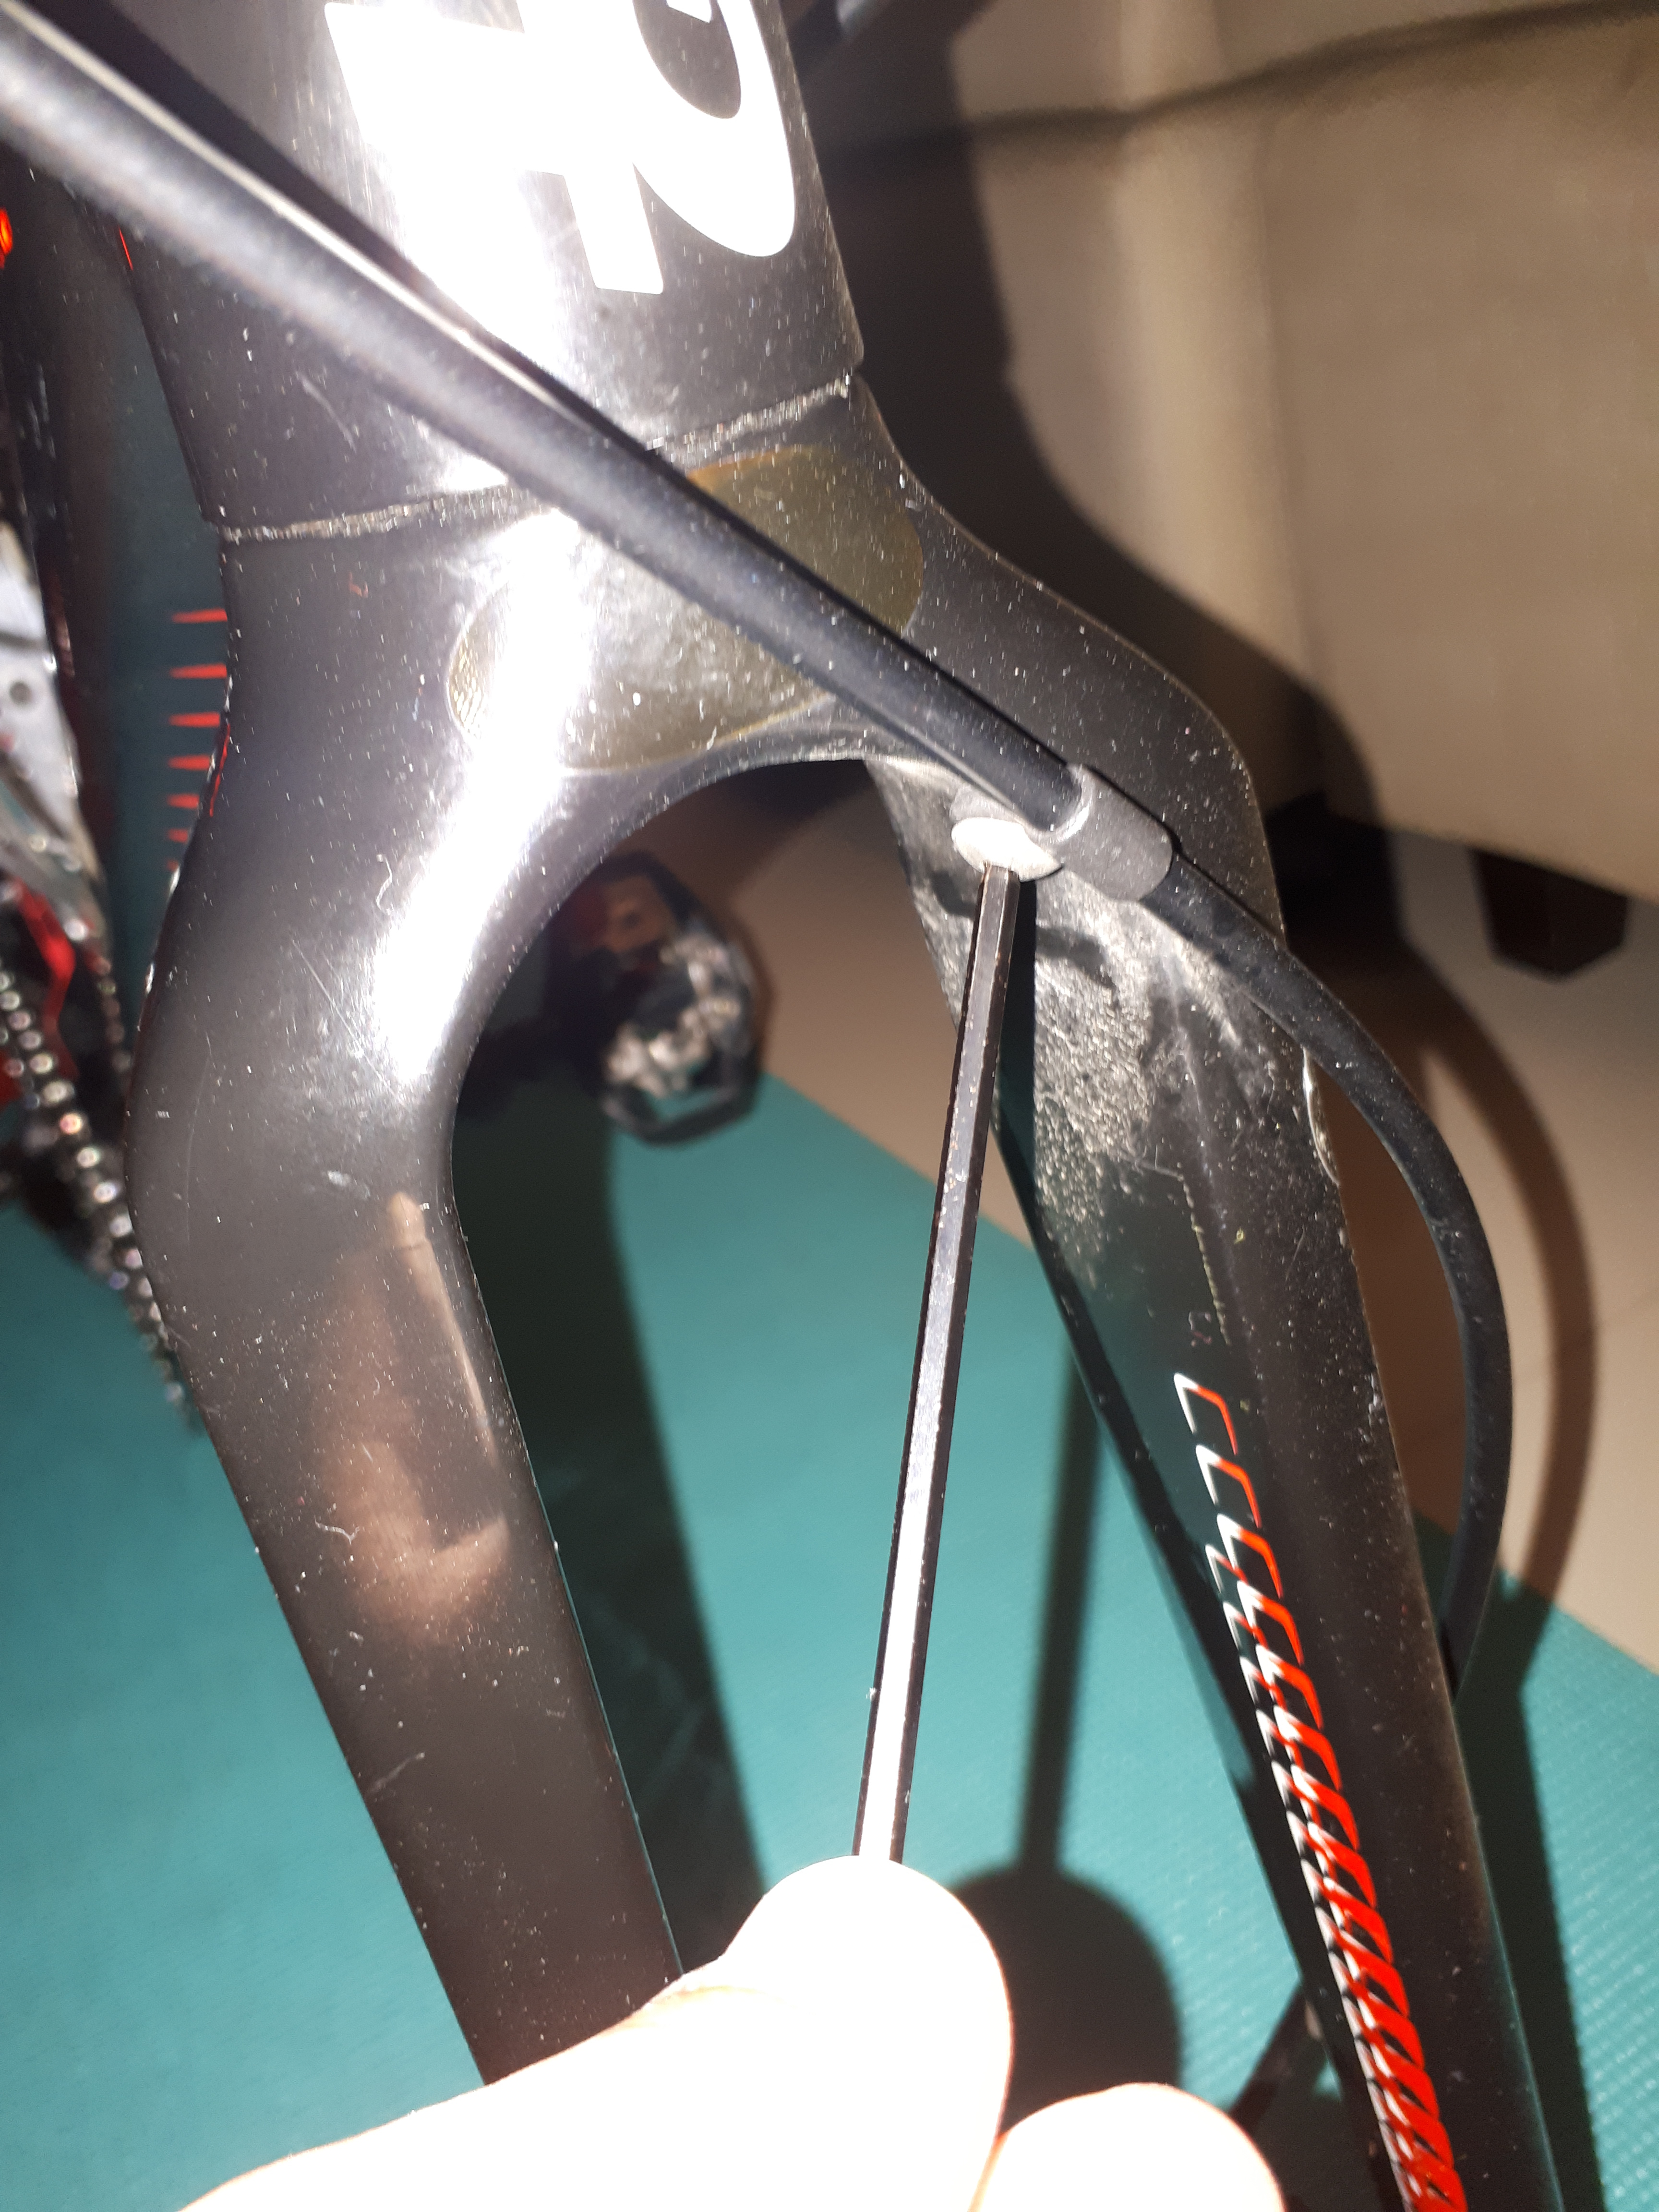 replacing bike brake cable